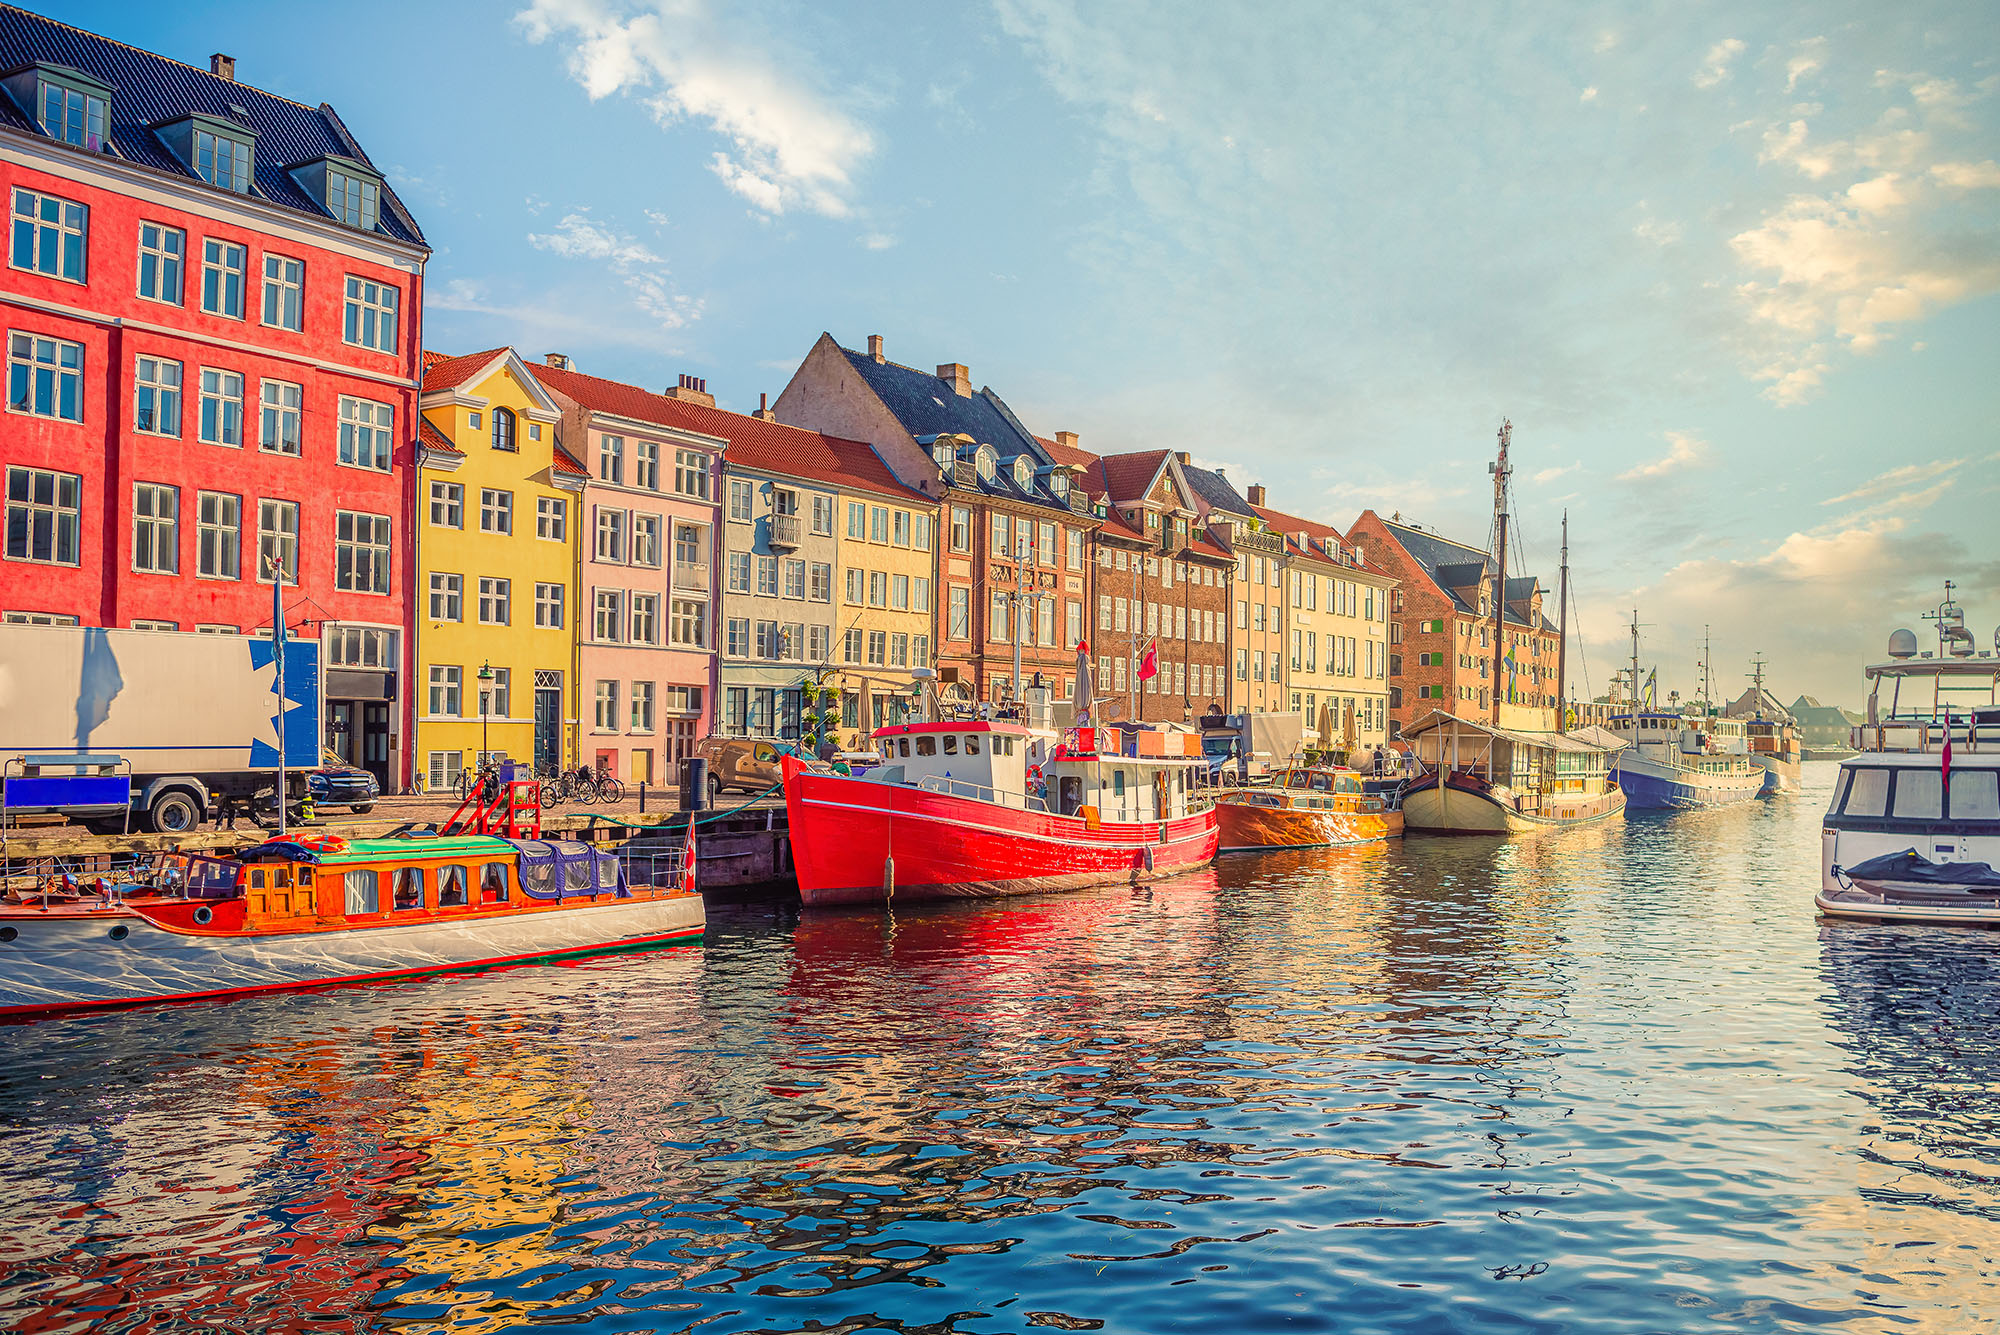 Vacanta in Copenhaga – 190 euro (zbor si cazare 4 nopti)